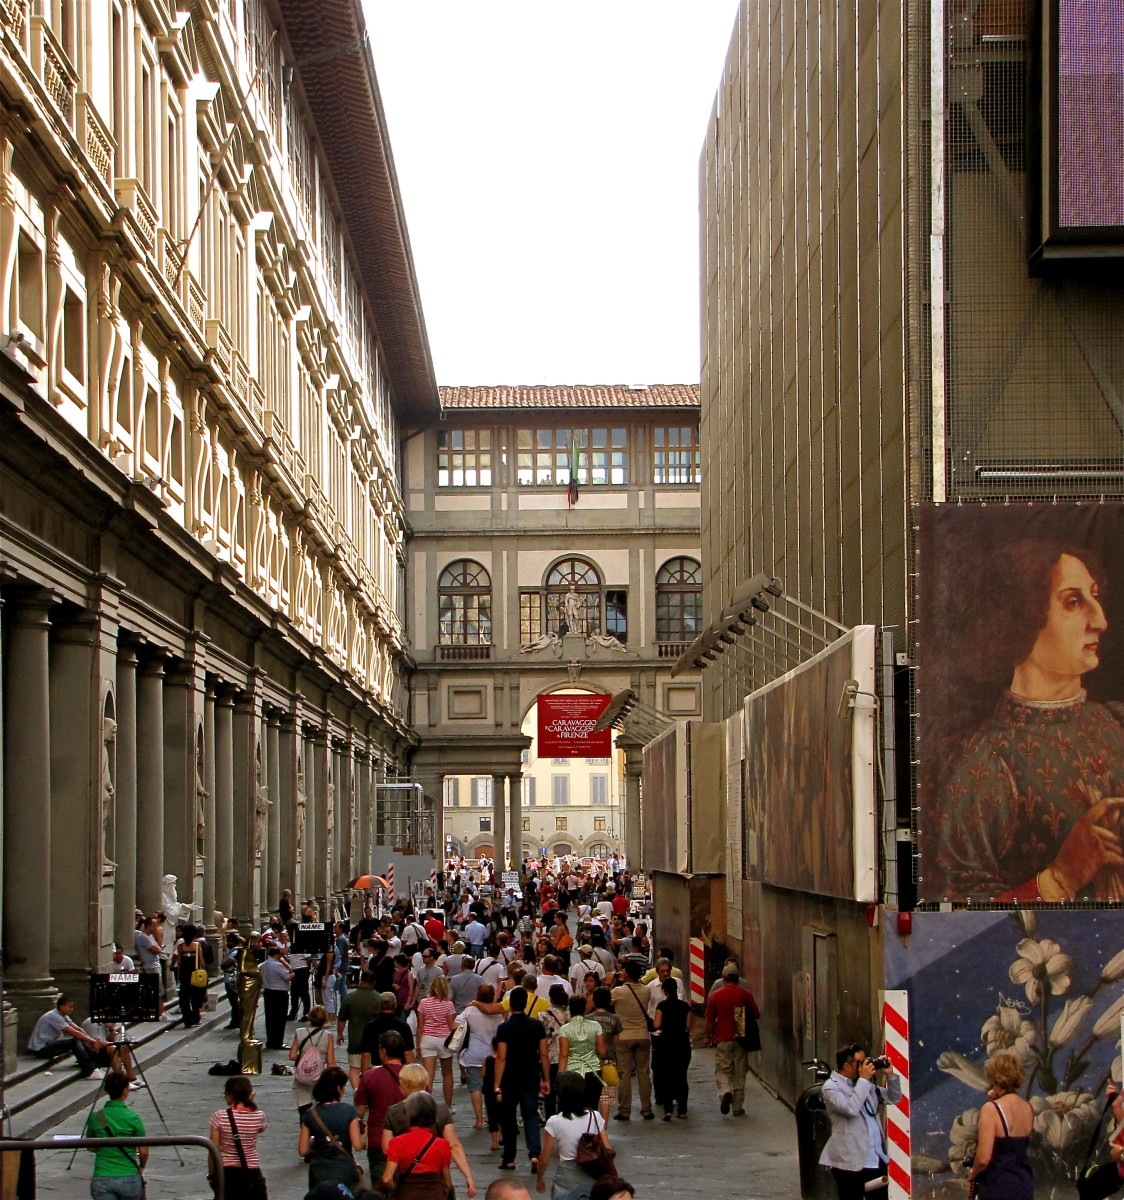 The Uffizi